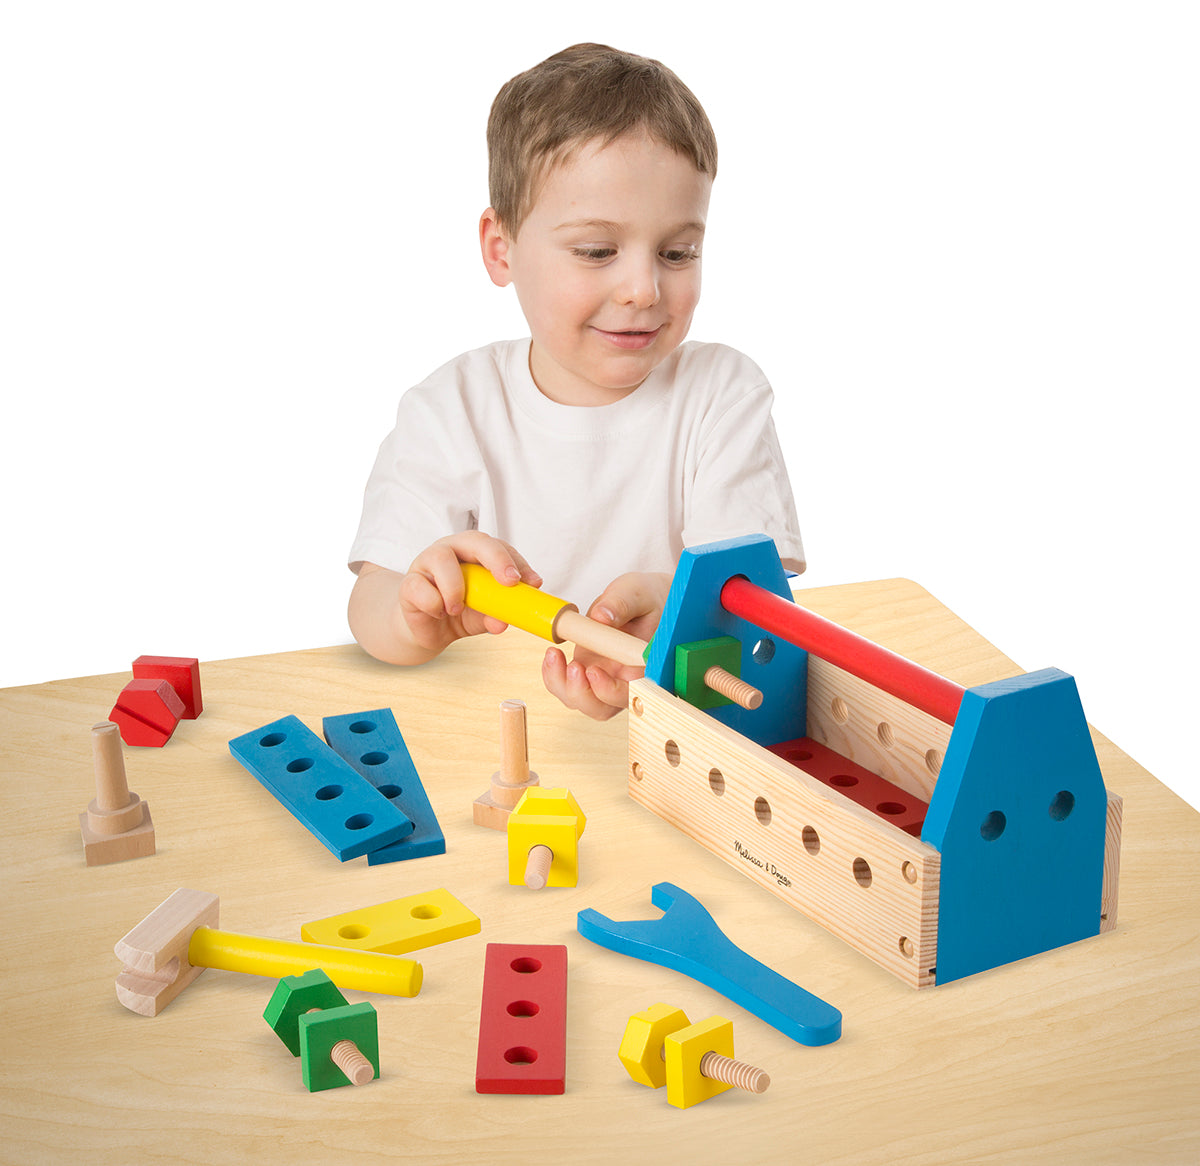 Melissa & Doug® 494 Take-Along Wooden Toy Tool Kit Set, 24-Piece